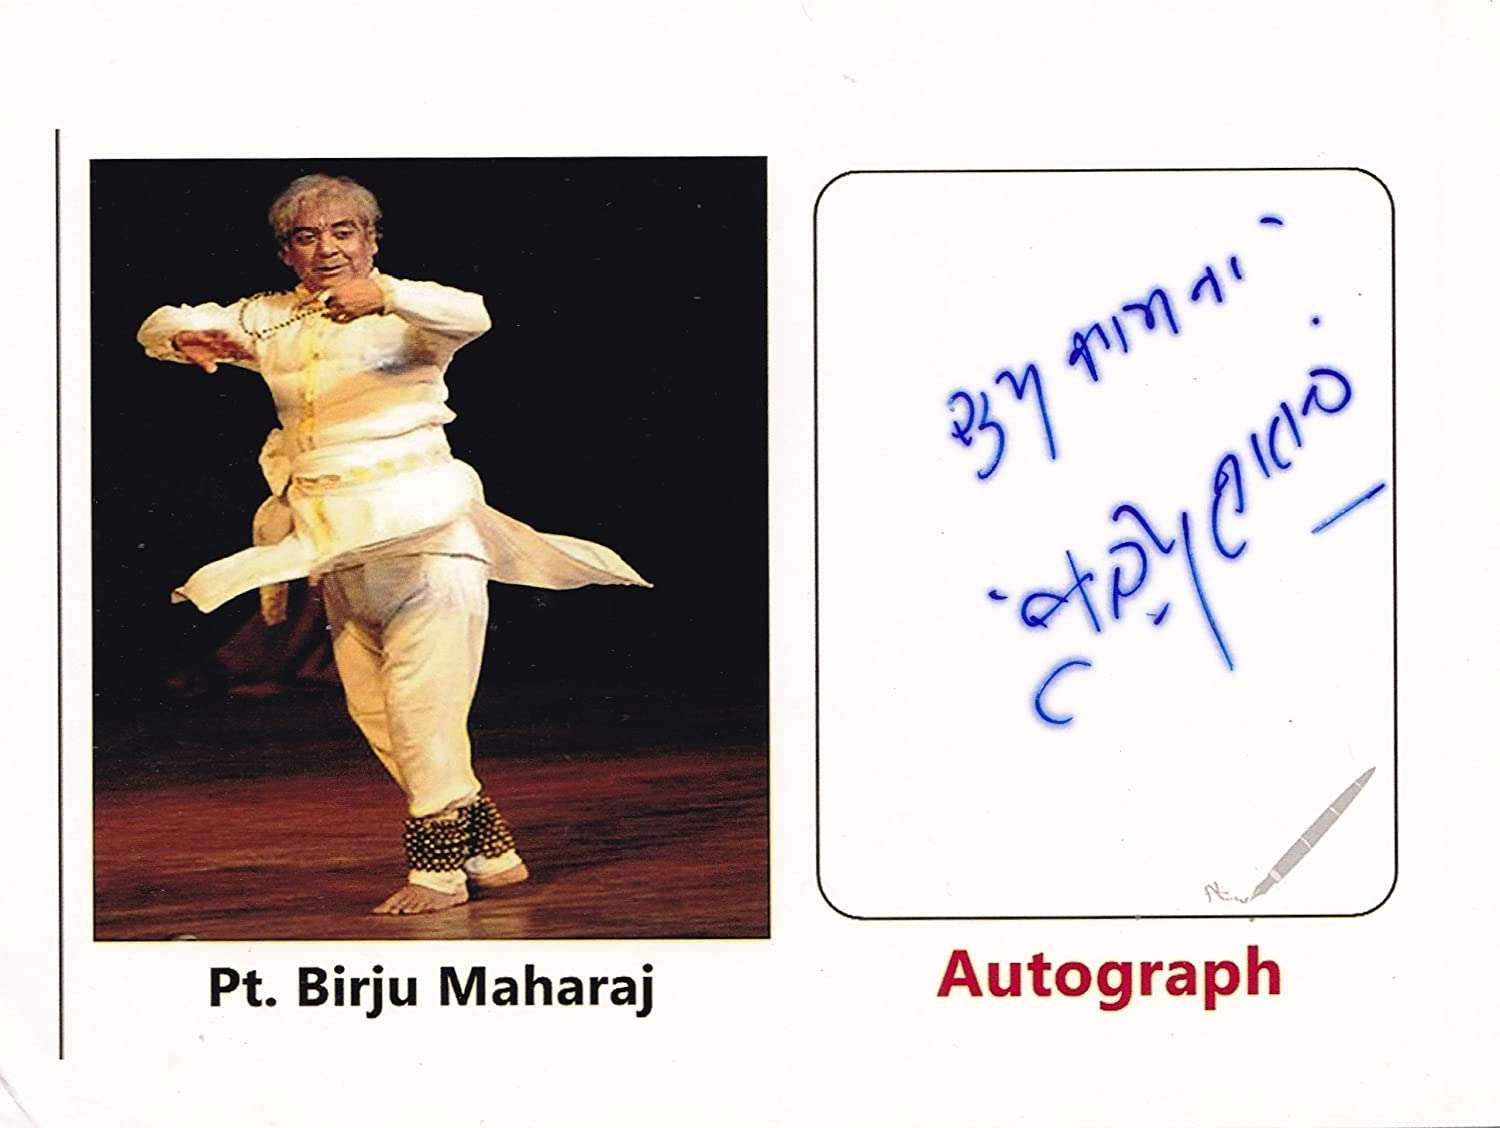 Birju Maharaj